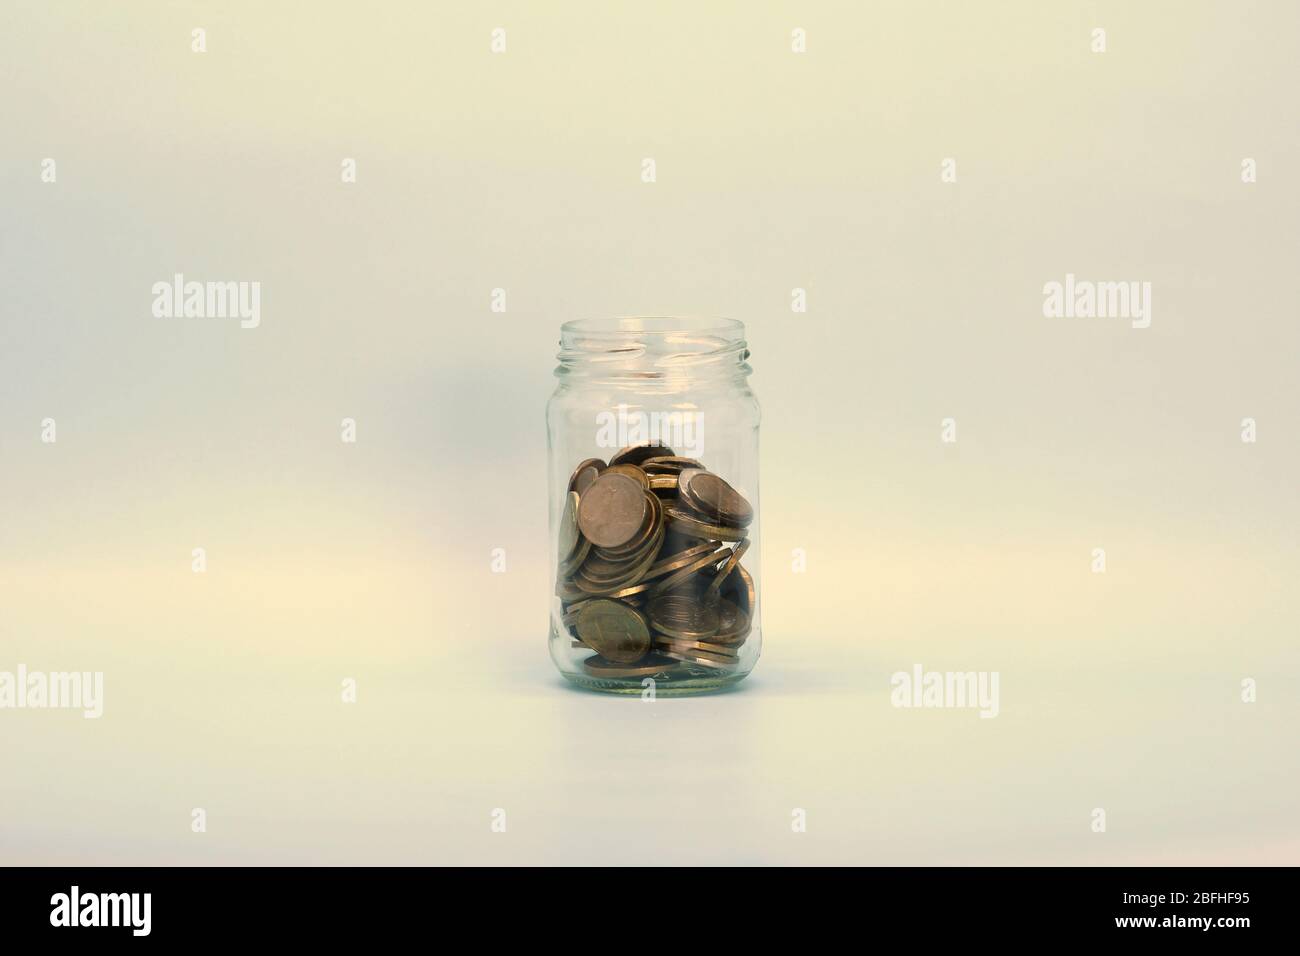 Monete metalliche, rubli russi, giacciono in un vaso di vetro trasparente su uno sfondo chiaro. Posizionare per testo e disegno. Foto Stock